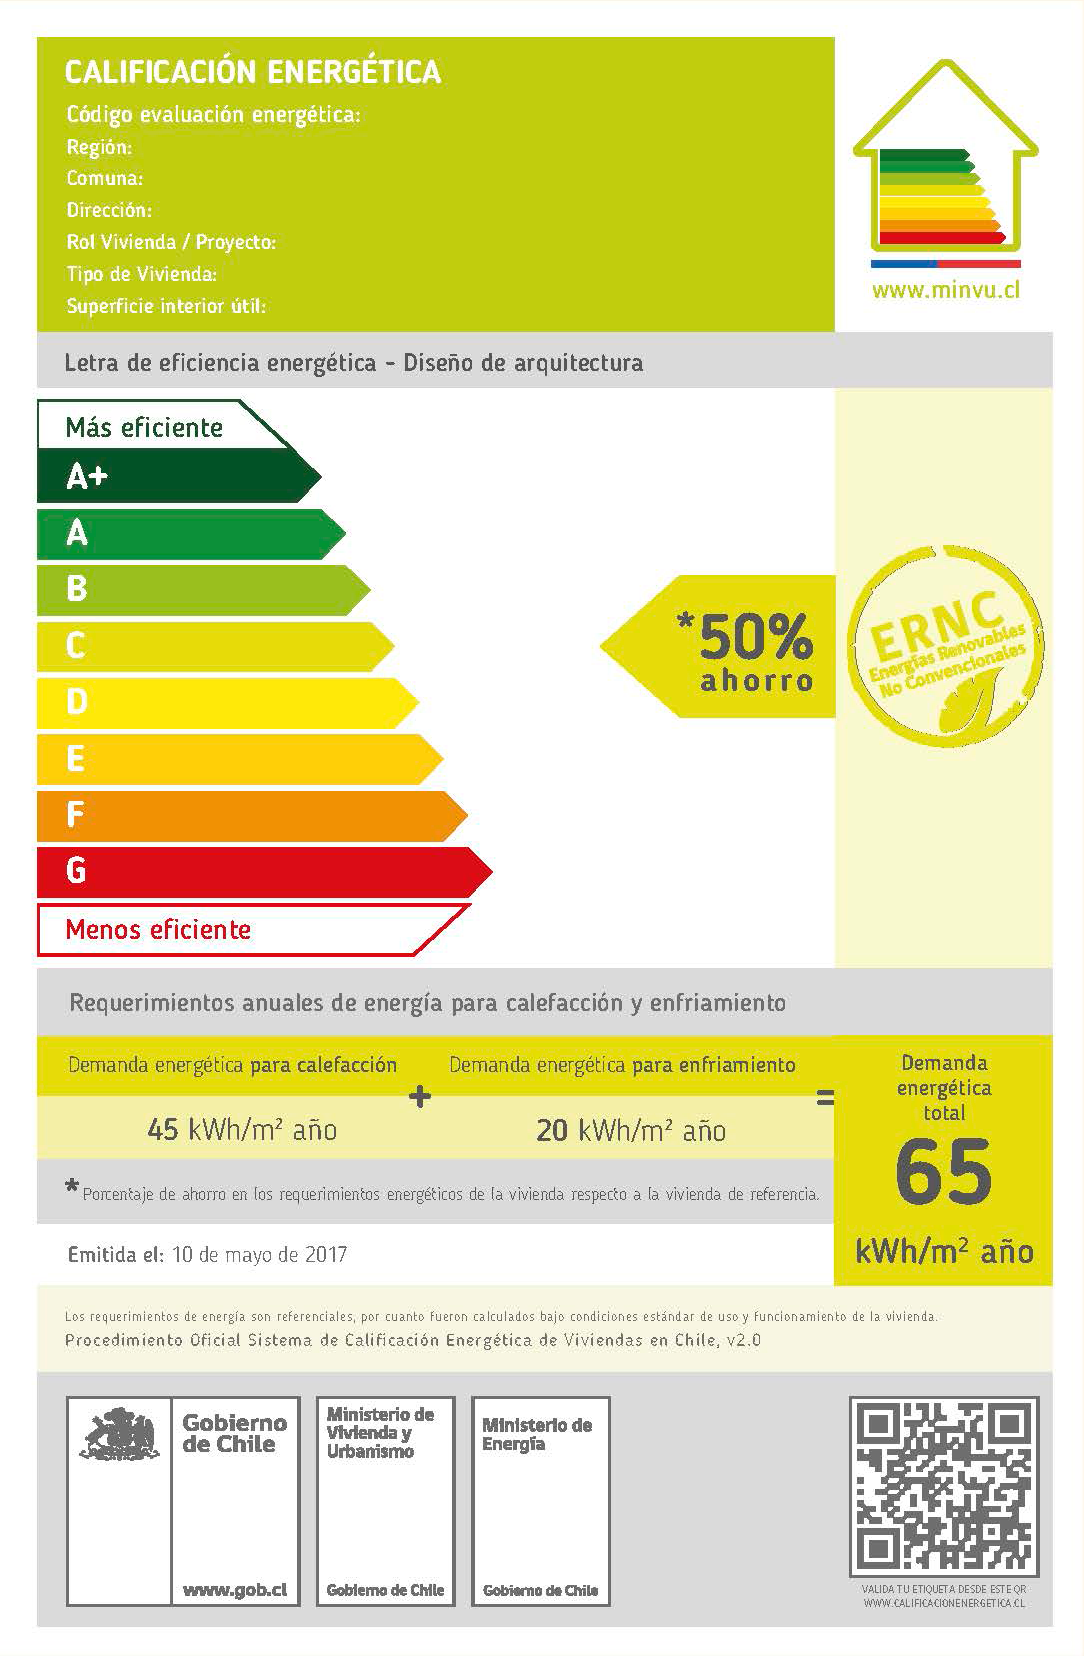 Etiquetados de Eficiencia Energética. Calificación Energética de Viviendas y Edificios